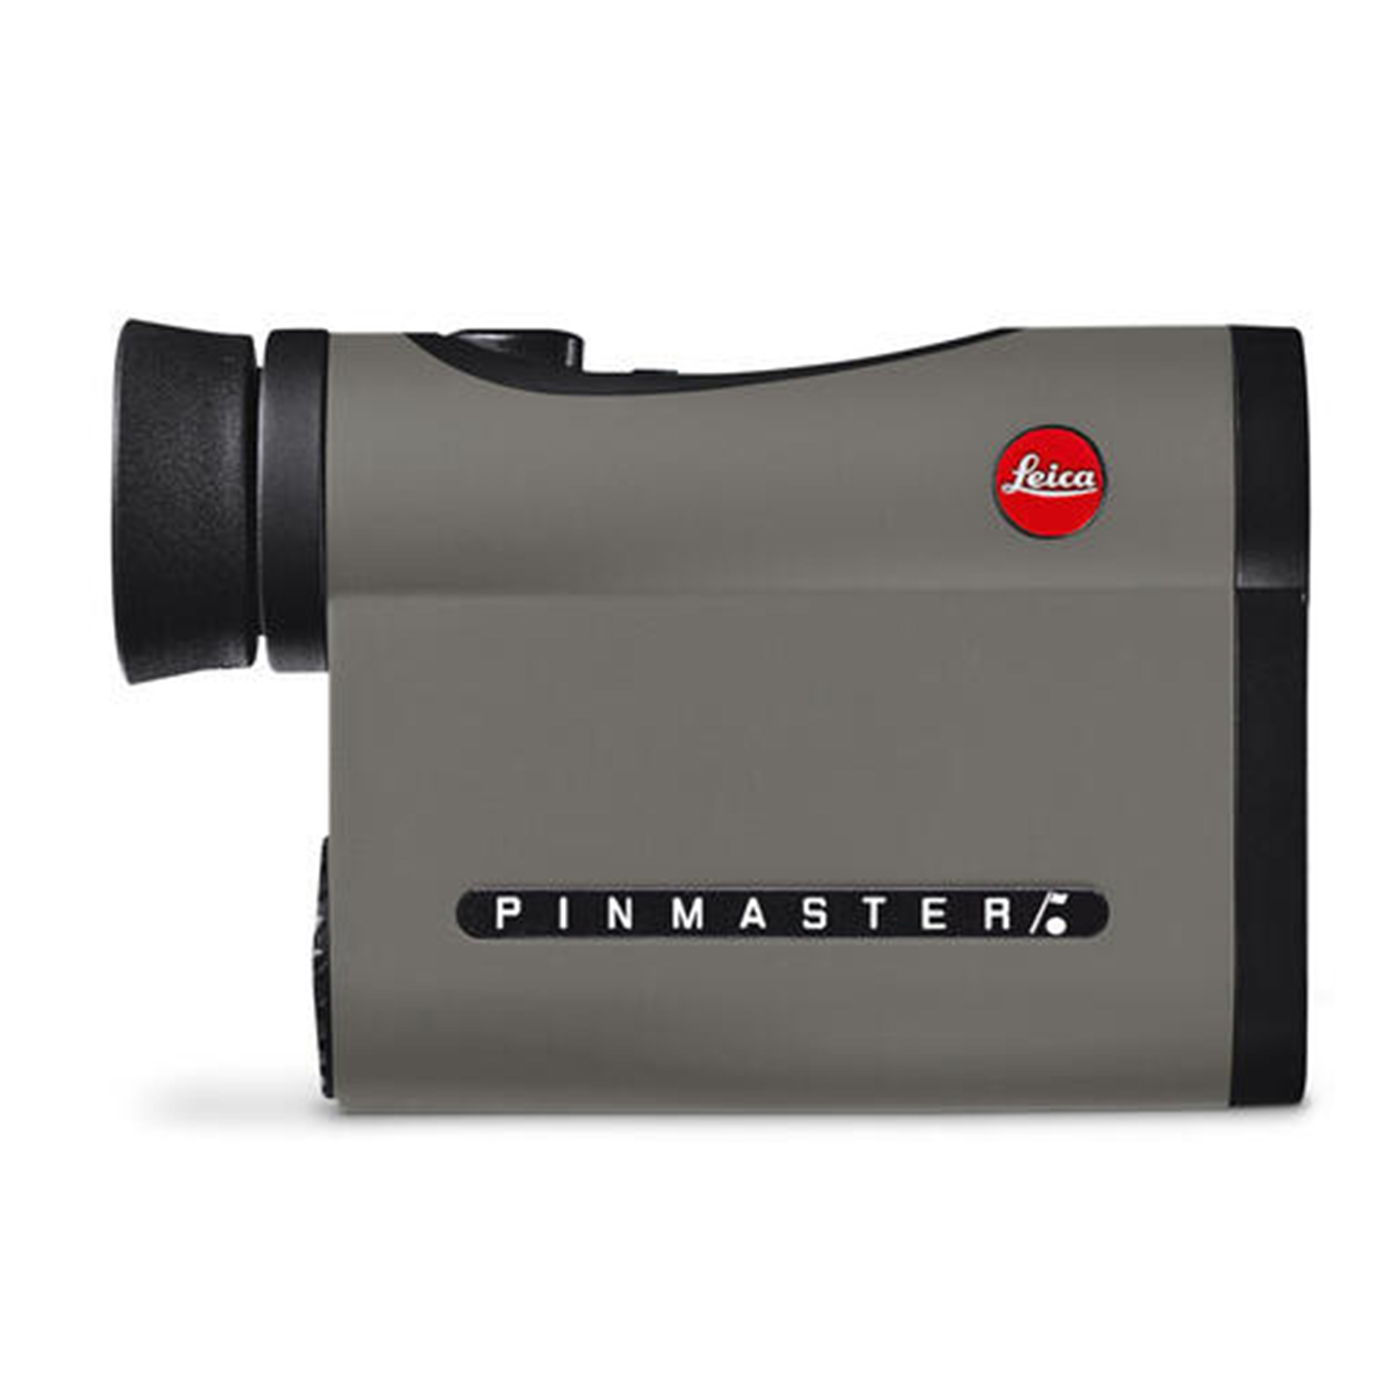 Leica Pinmaster II távolságmérő